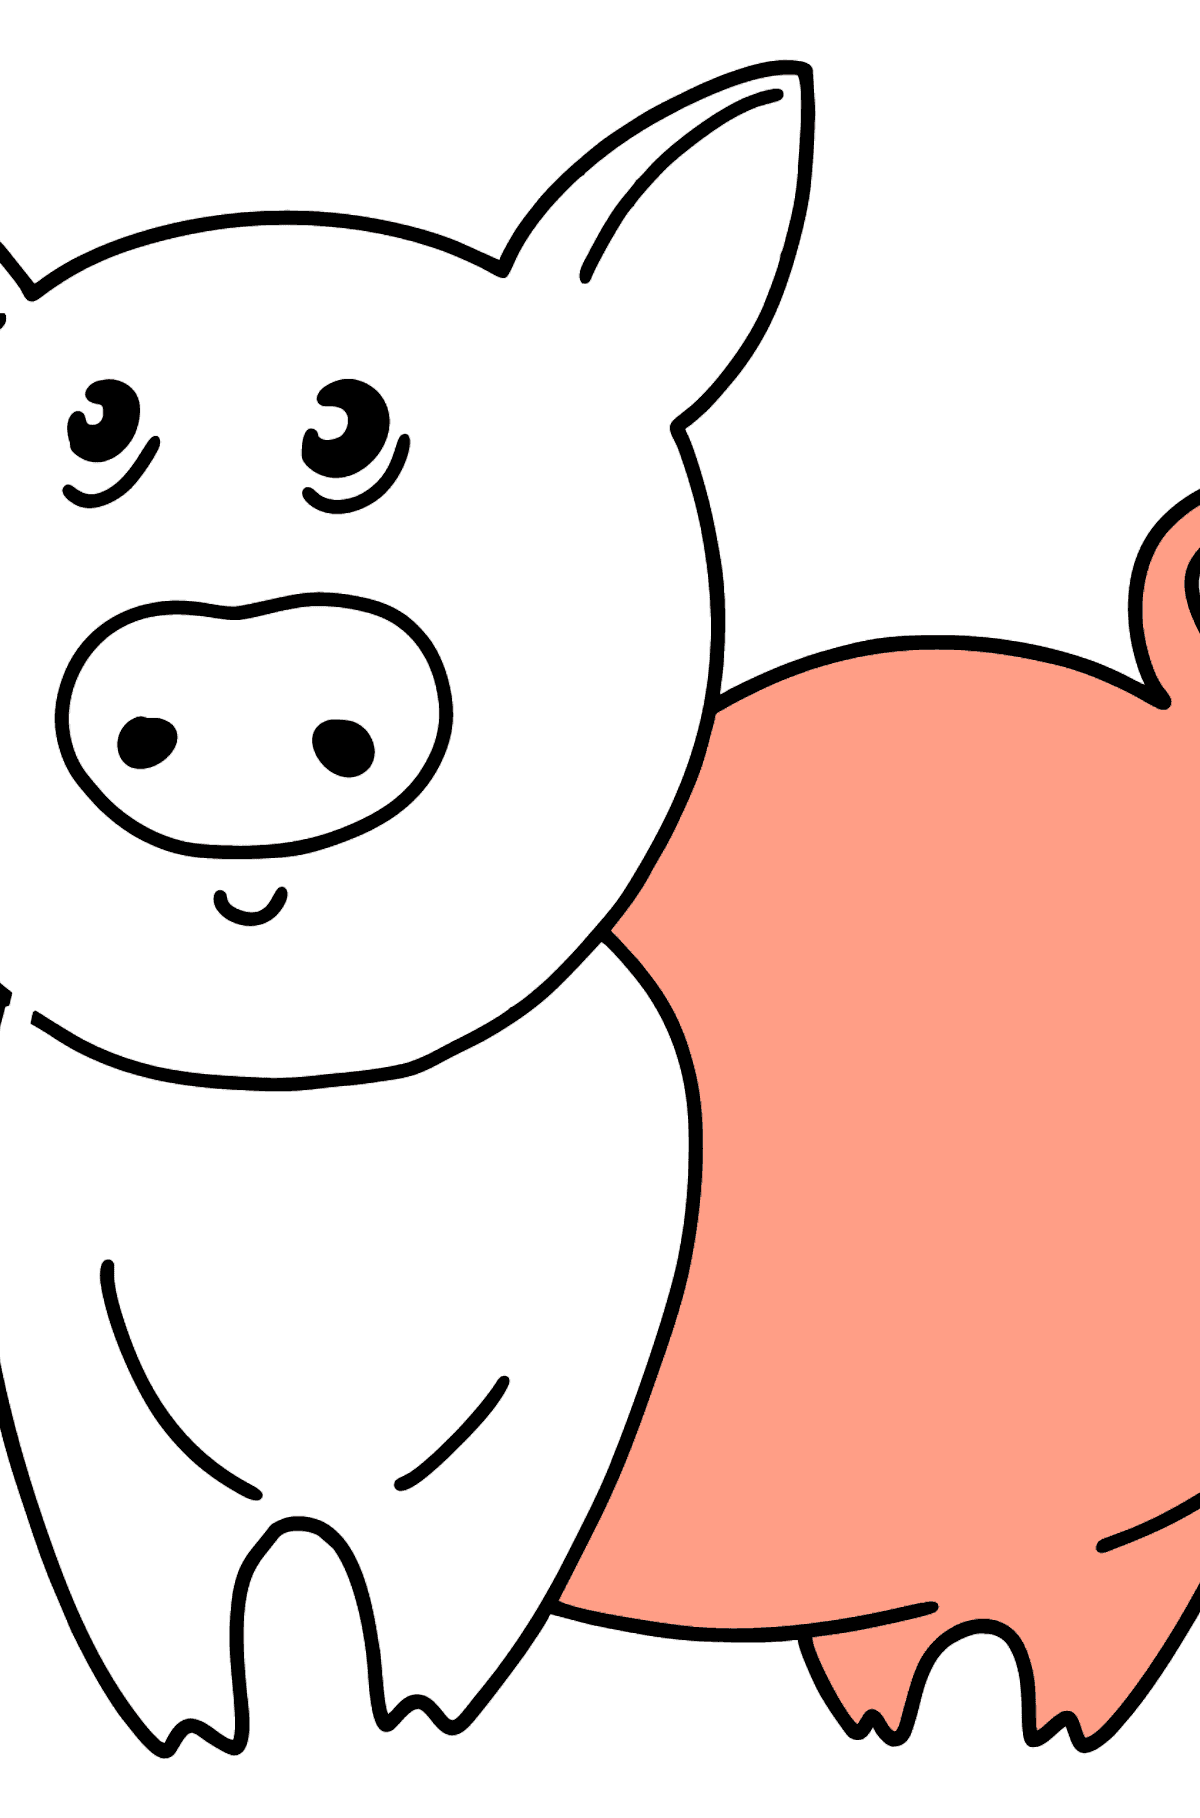 Porco para colorir - Imagens para Colorir para Crianças